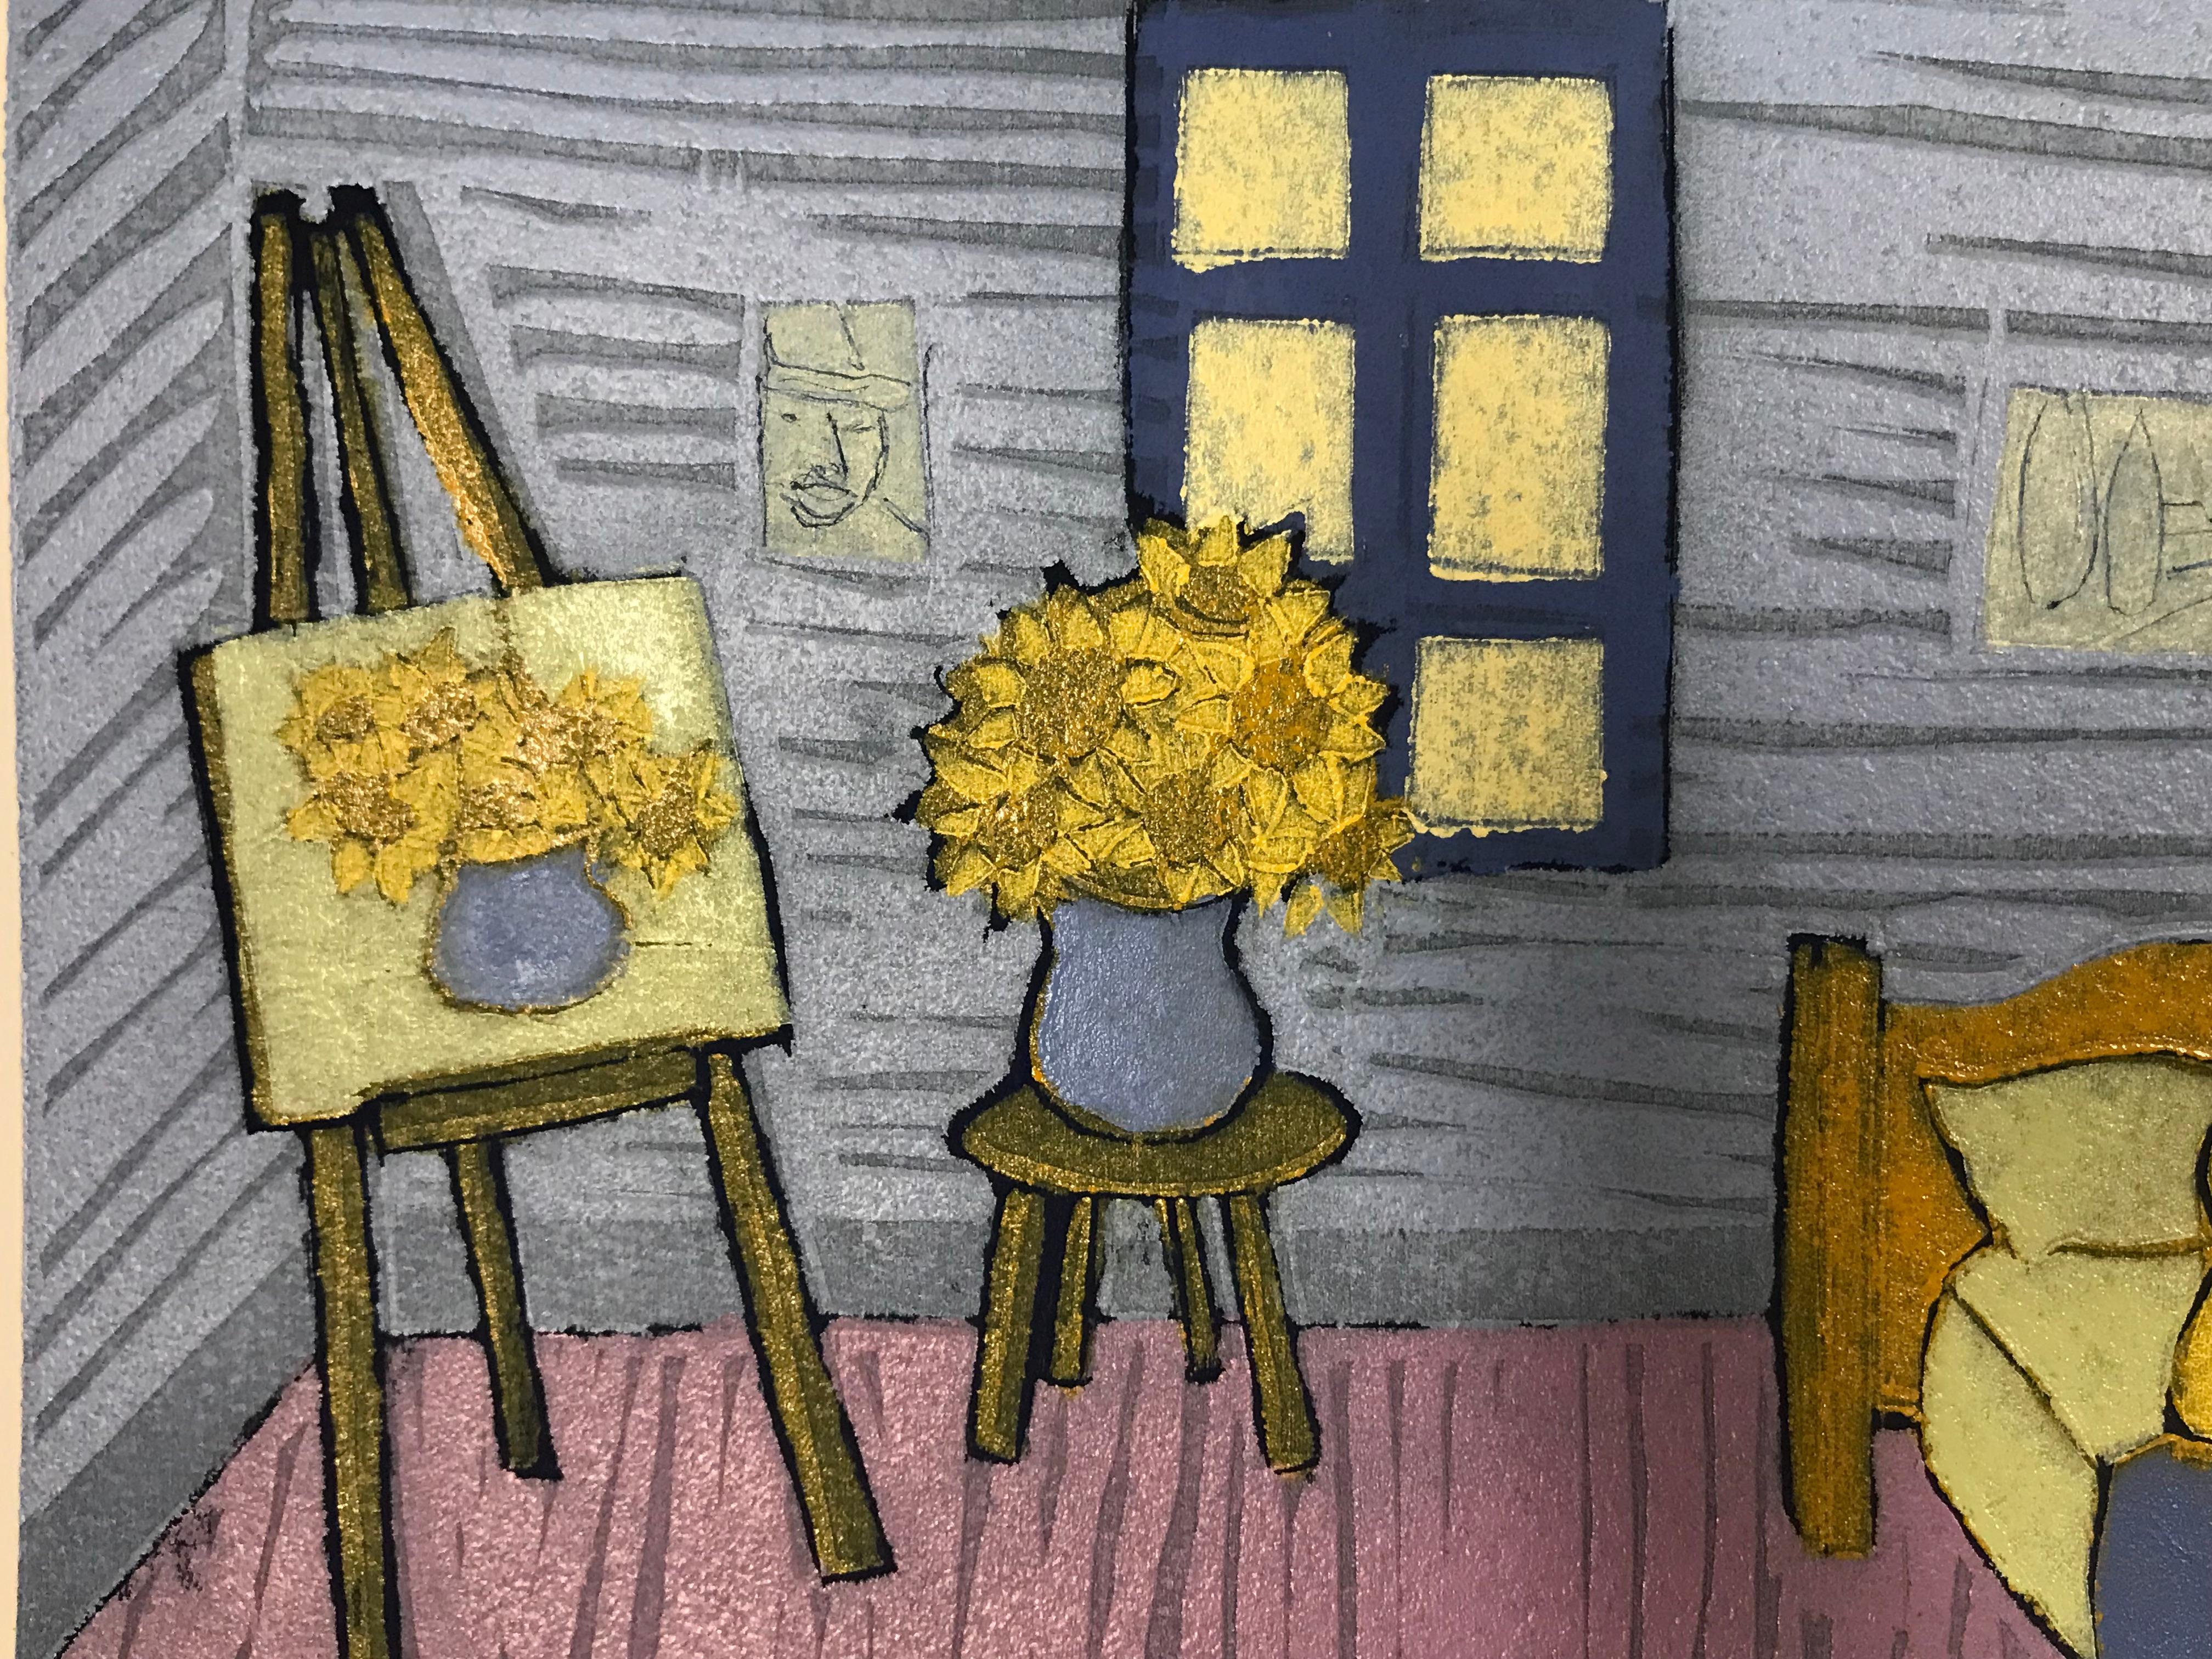 Ein Holzschnitt auf Papier in limitierter Auflage von Mychael Barratt  von Vincent Van Gogh in seinem Schlafzimmer mit seinem Hund. Im Hintergrund erscheinen Sonnenblumen, die einen blau-violetten Raum erhellen.

Zusätzliche Informationen:
Mychael